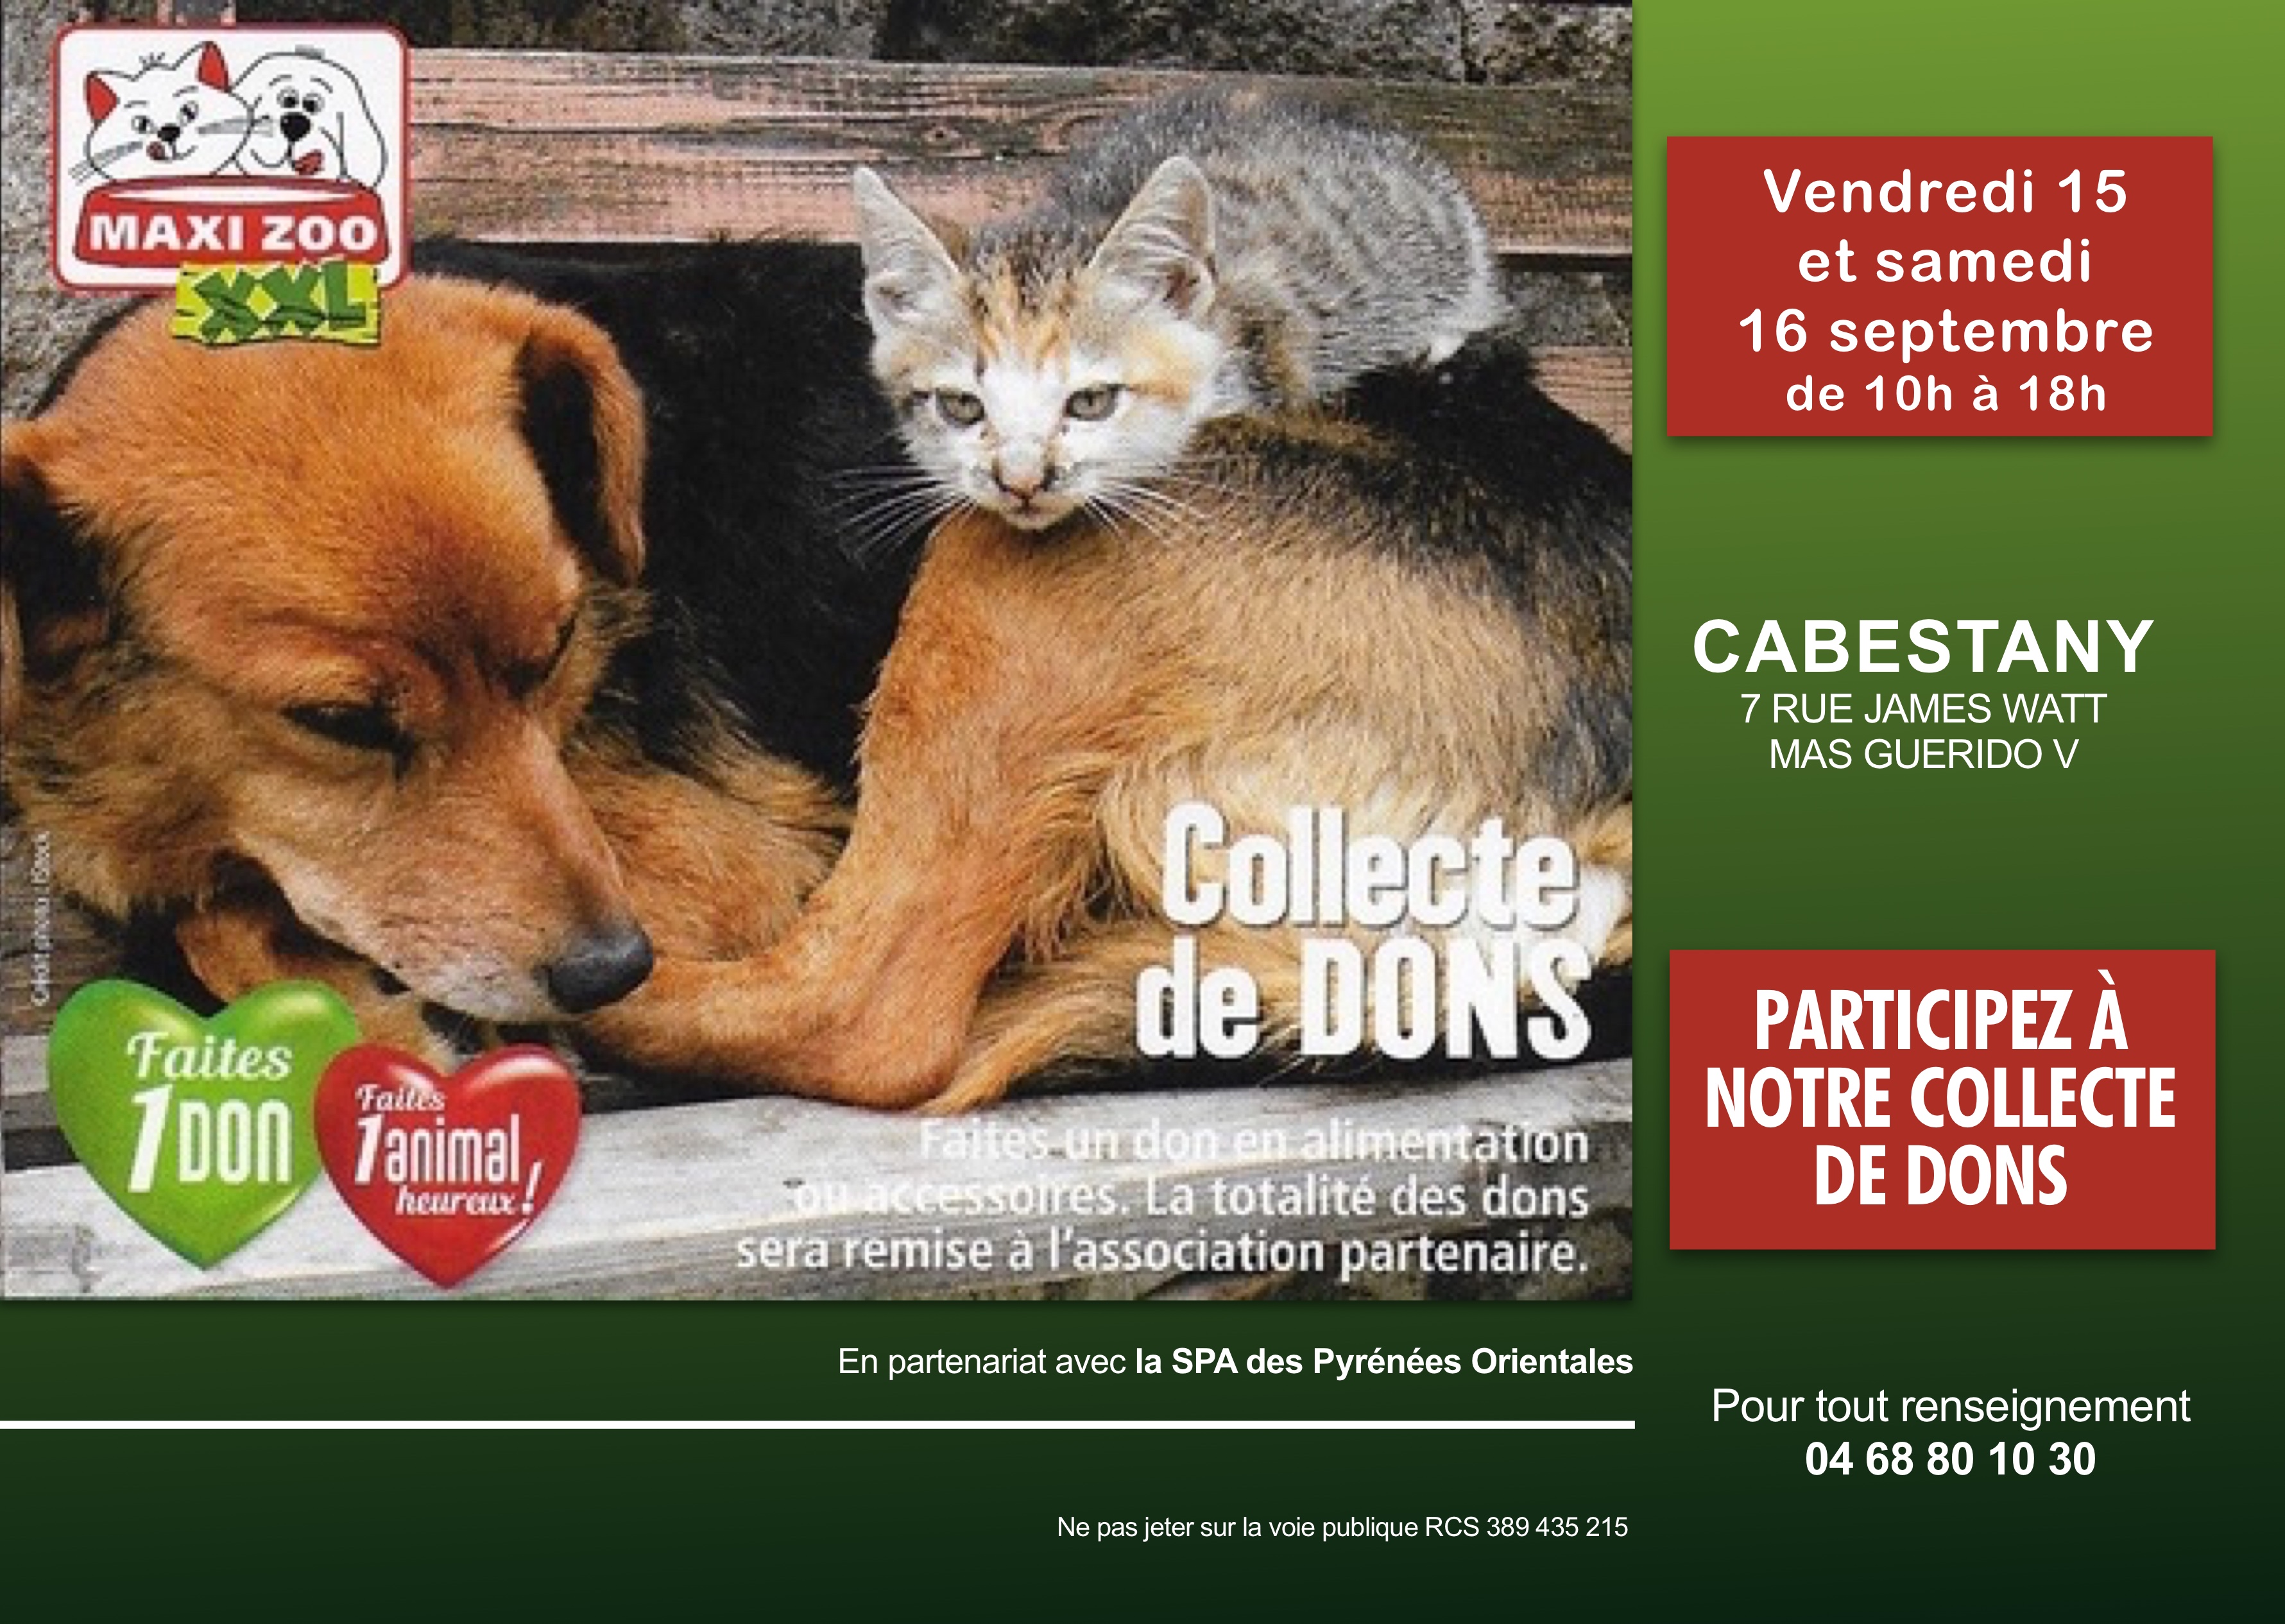 La SPA des Pyrénées Orientales du Sud fait appel à votre générosité lors d’un appel aux dons et aux croquettes le 15 et le 16 septembre au magasin Maxi Zoo de Cabestany.